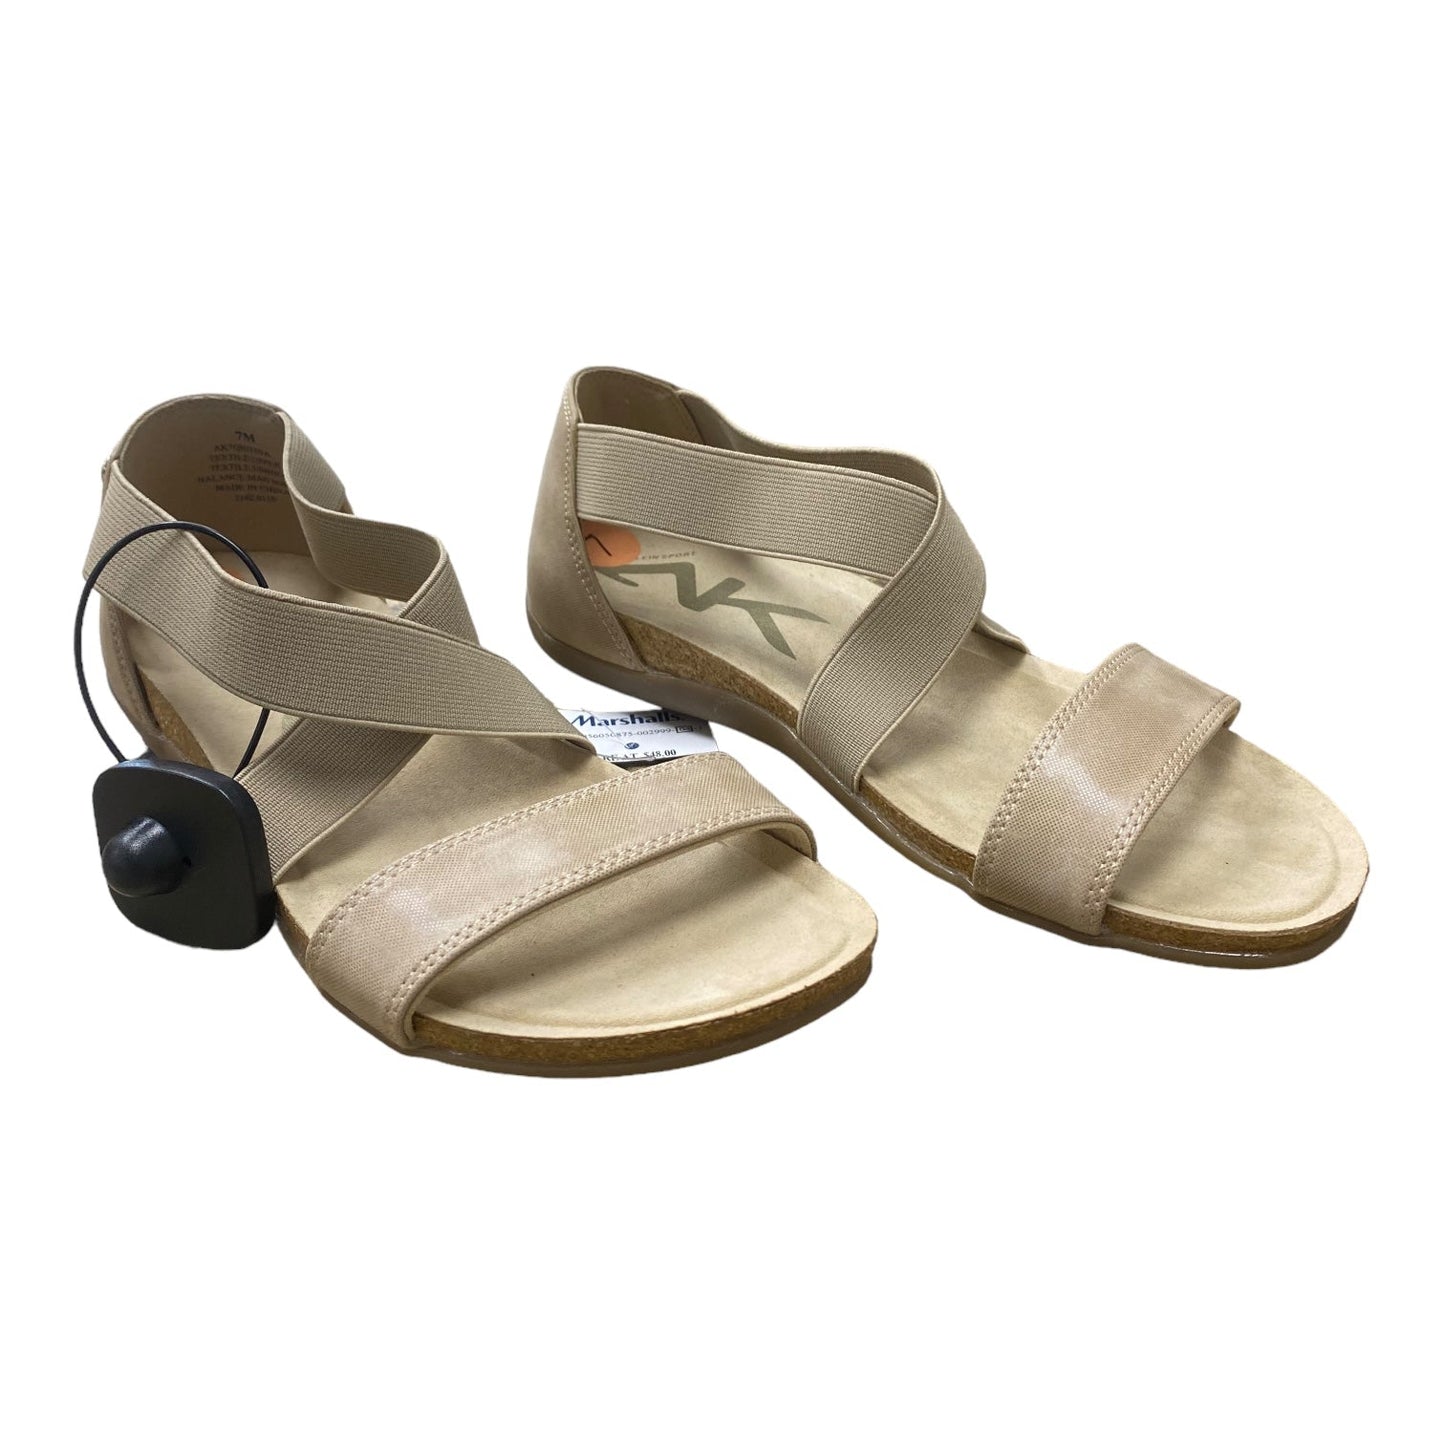 Beige Sandals Flats Anne Klein, Size 7